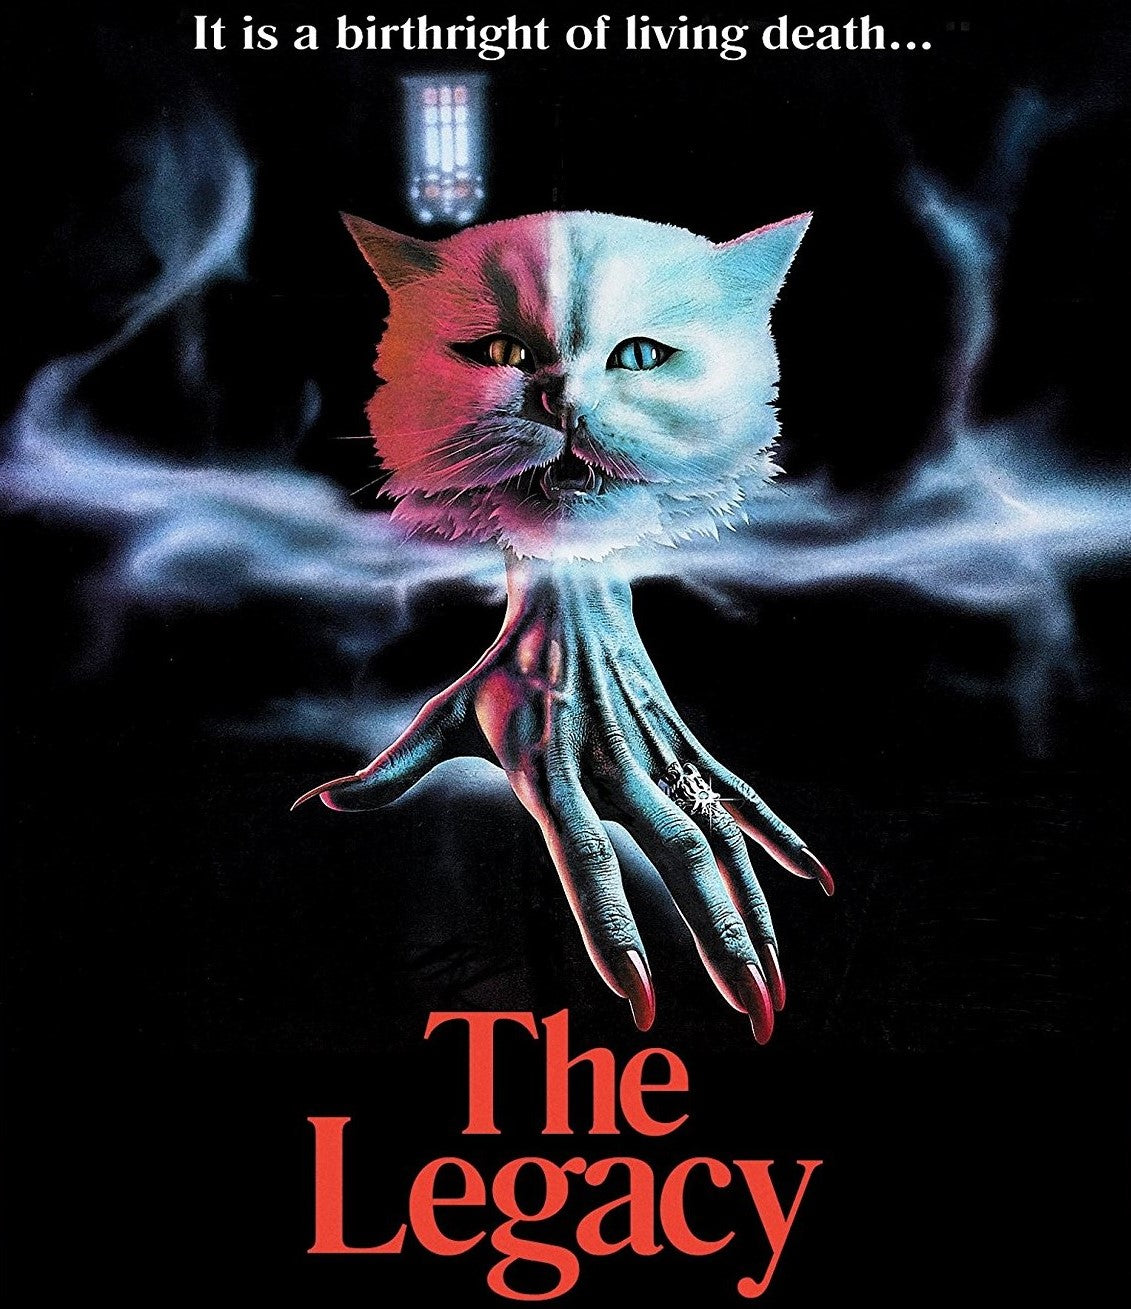 The Legacy Blu-Ray Blu-Ray